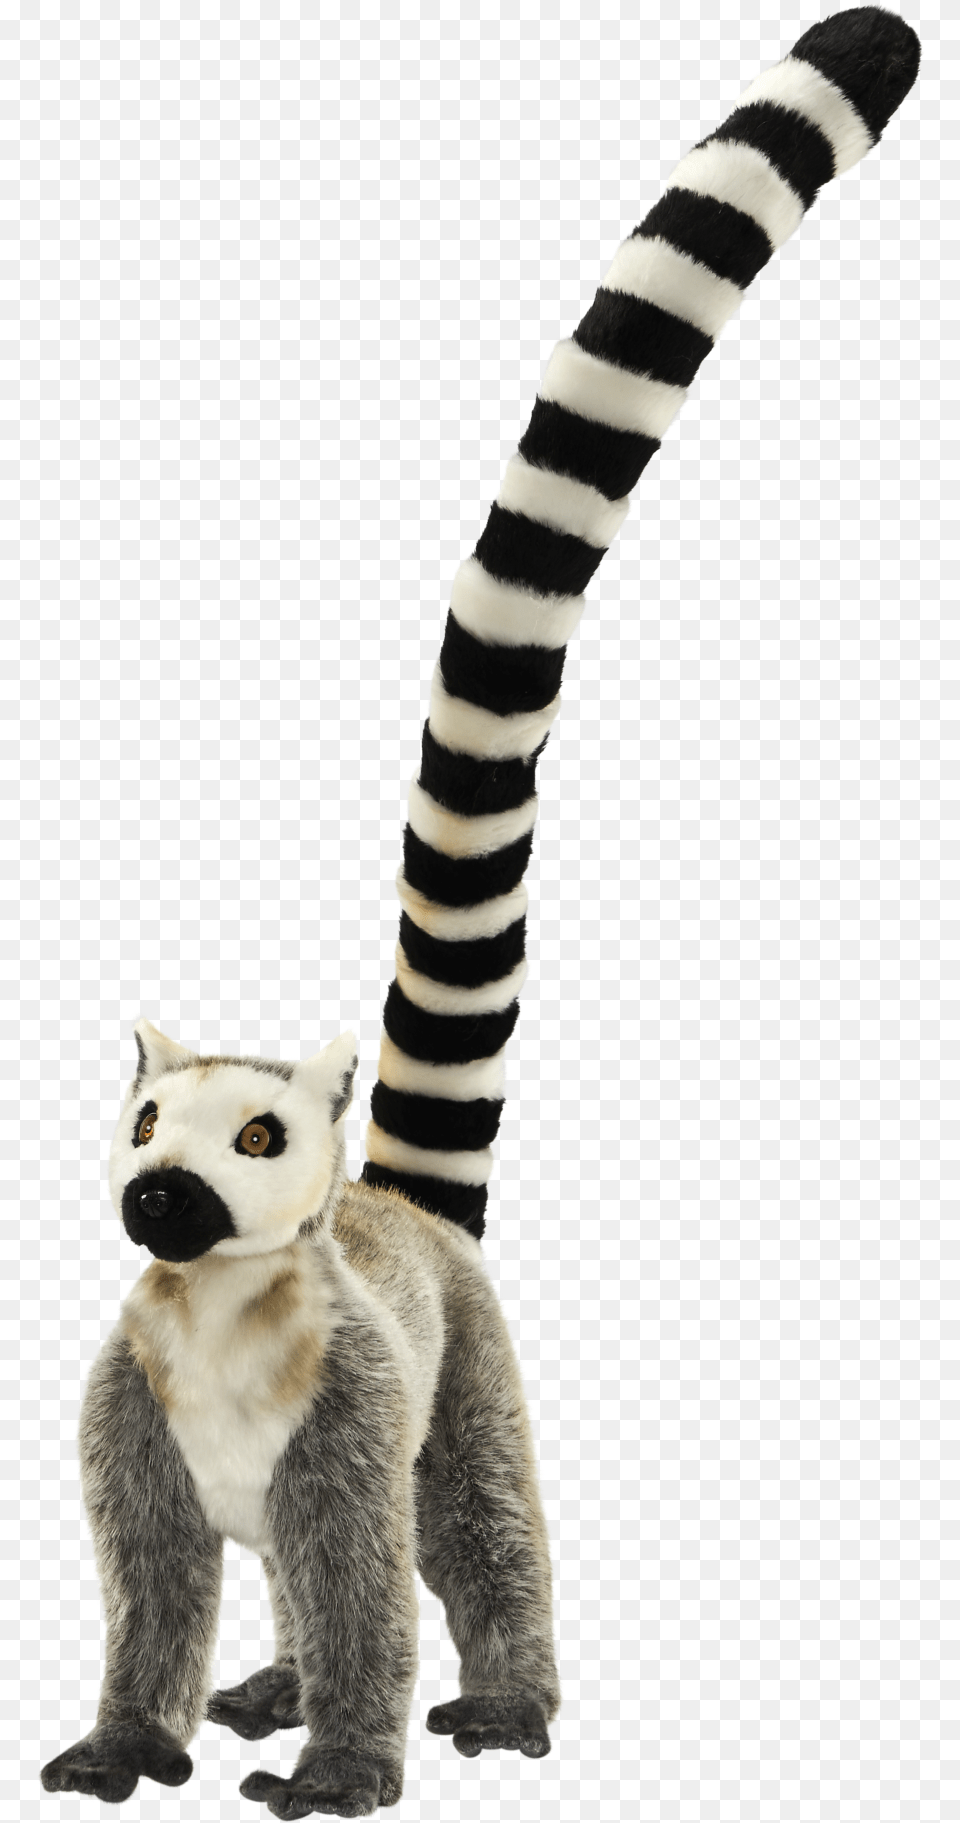 Lemur Tail Circle Dial Icon, Animal, Wildlife, Mammal, Cat Free Png